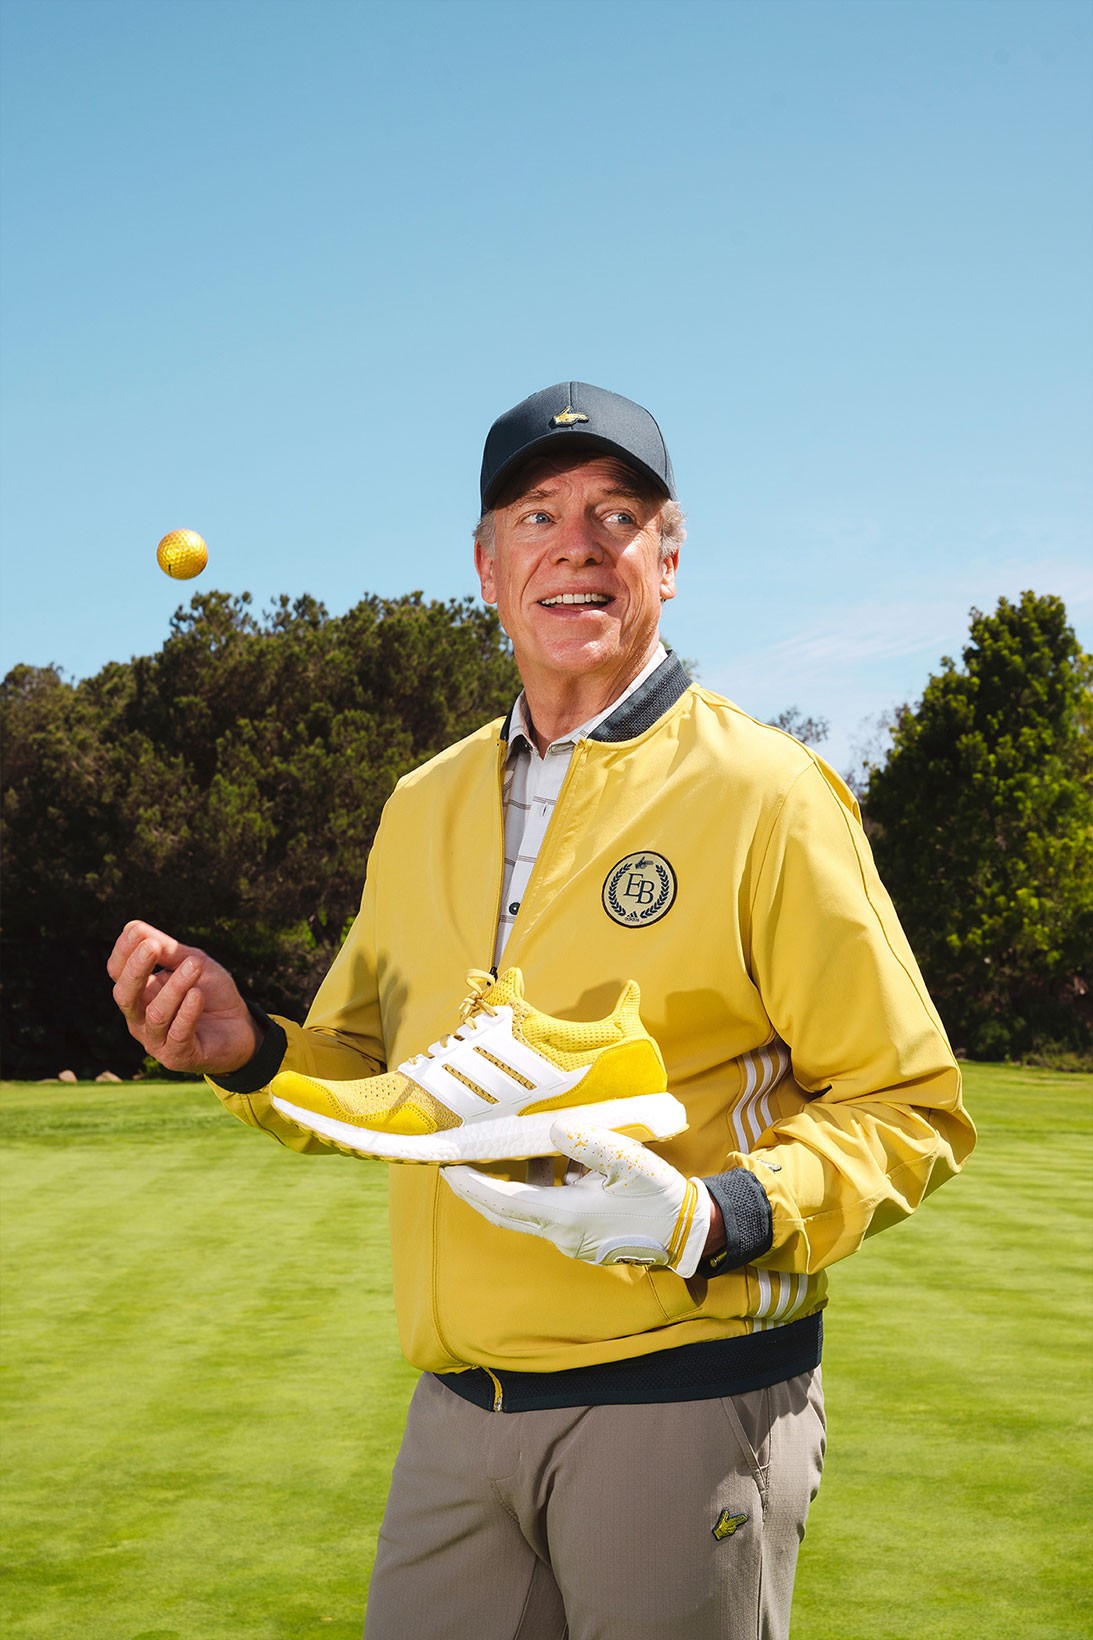 adidas выпустил гольф-коллекцию в стиле комедии «Счастливчик Гилмор» (фото 2)